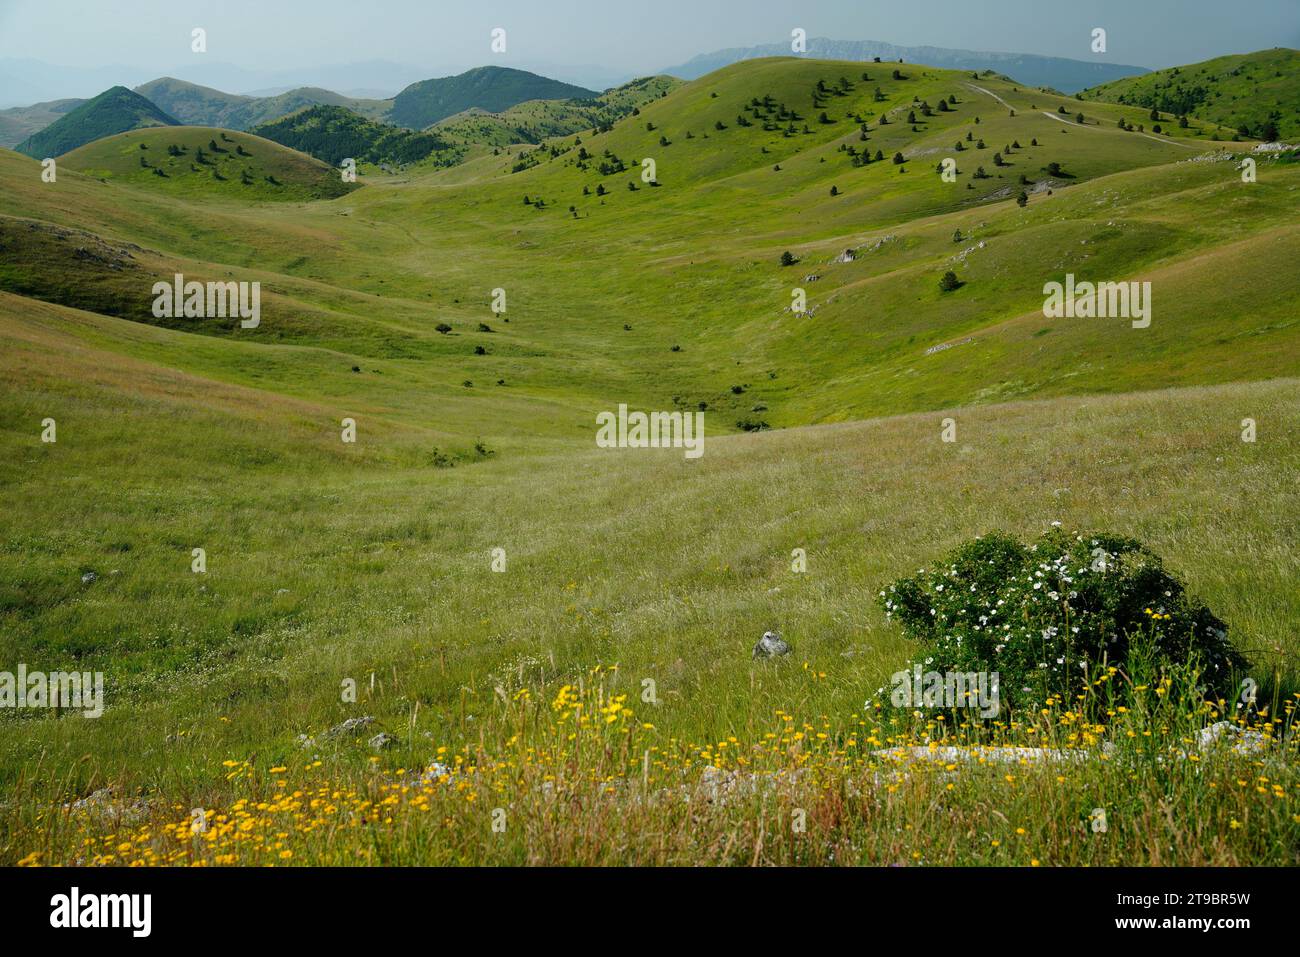 Litlle Tibet,Gran Sasso and Monti della Laga National Park,provinces of Teramo, L'Aquila, Pescara, Abruzzo region, Italy Stock Photo